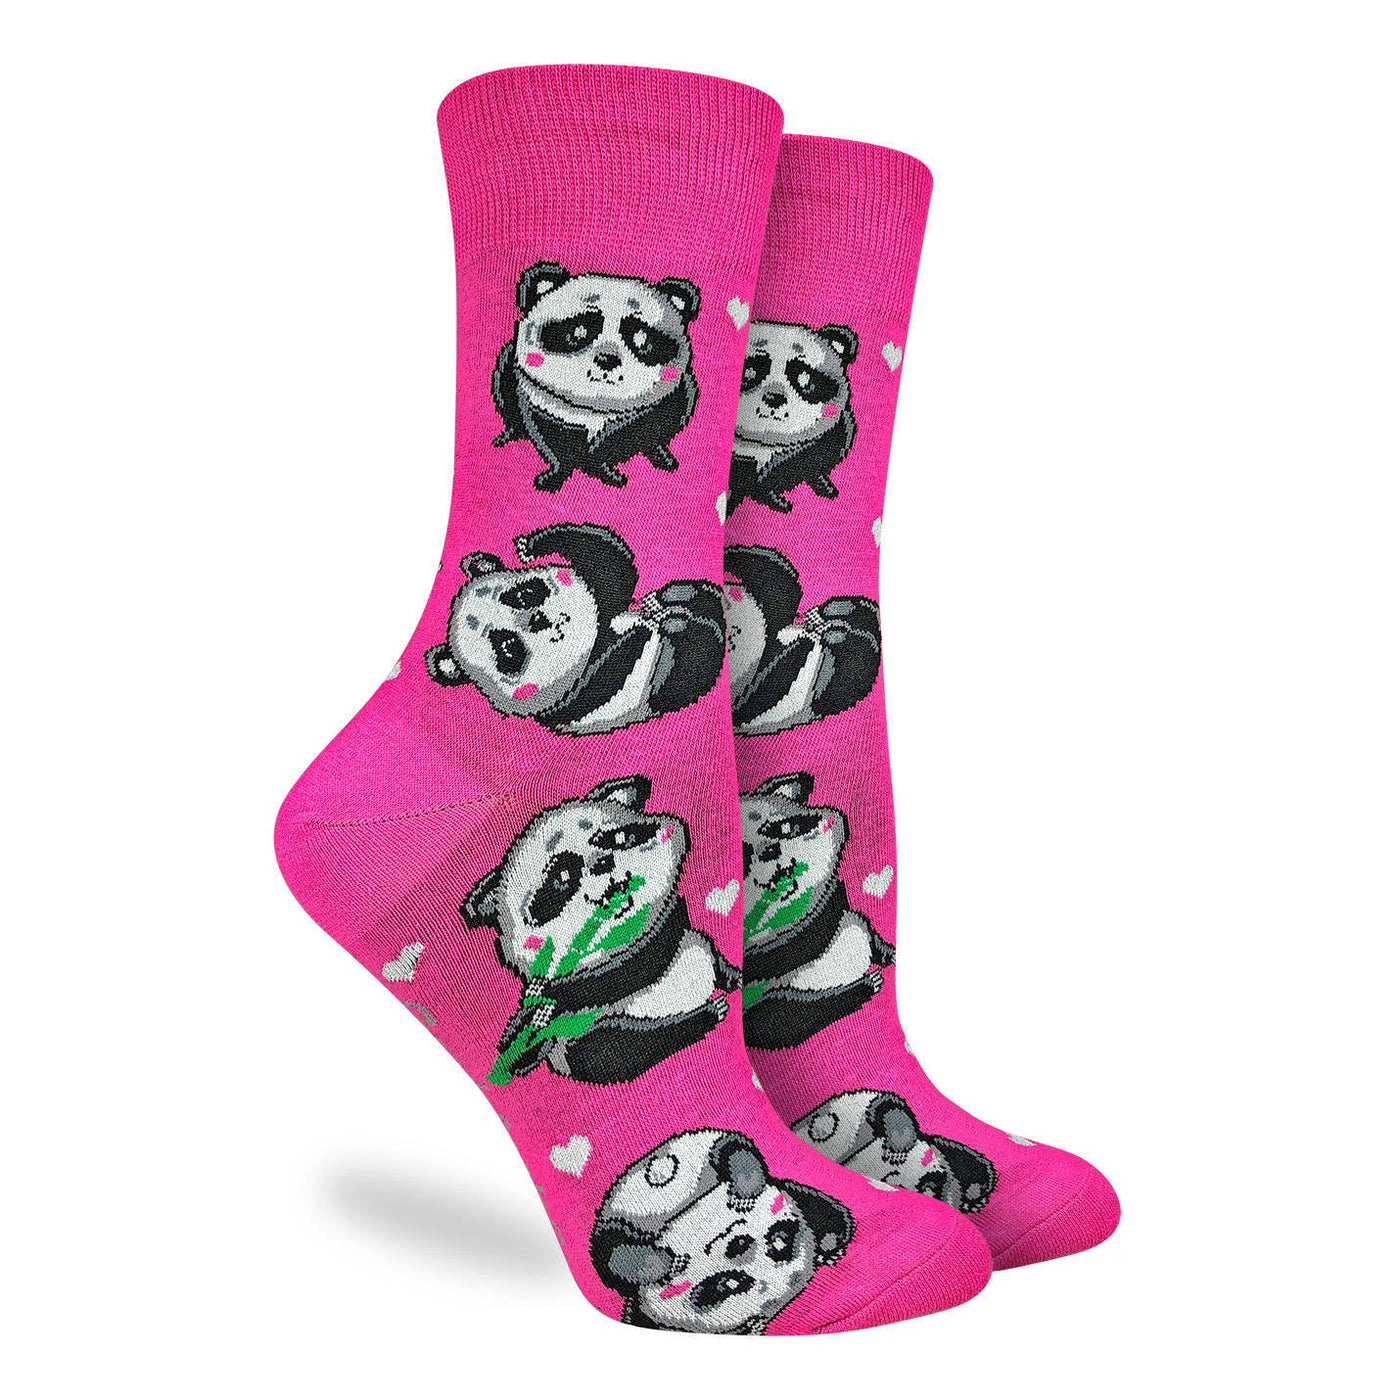 "Cute Pandas" Socks by Good Luck Sock- Medium